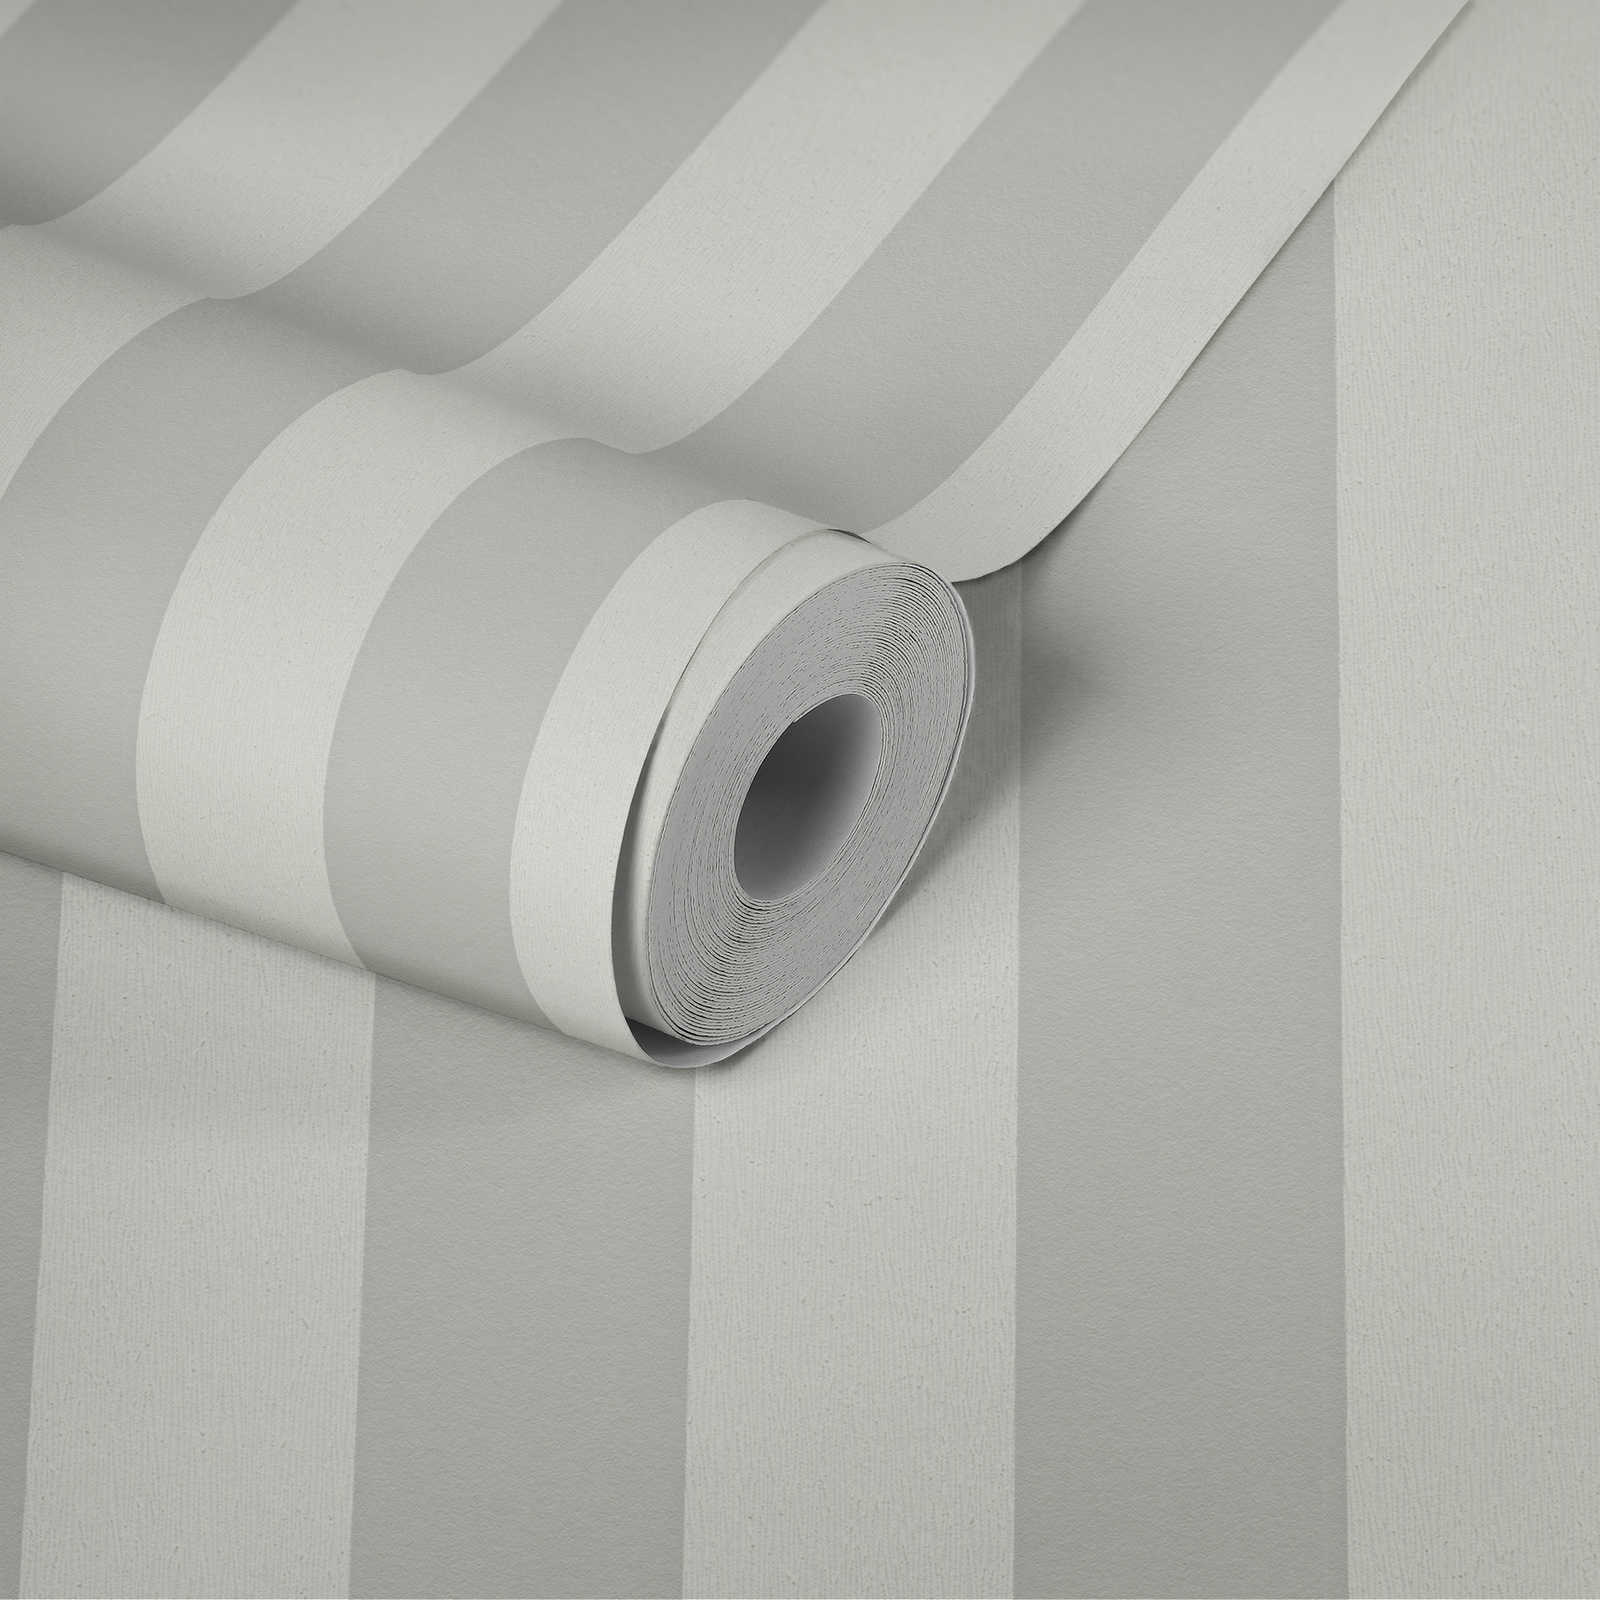             Stripe behang met structuurpatroon, blokstrepen grijs & wit
        